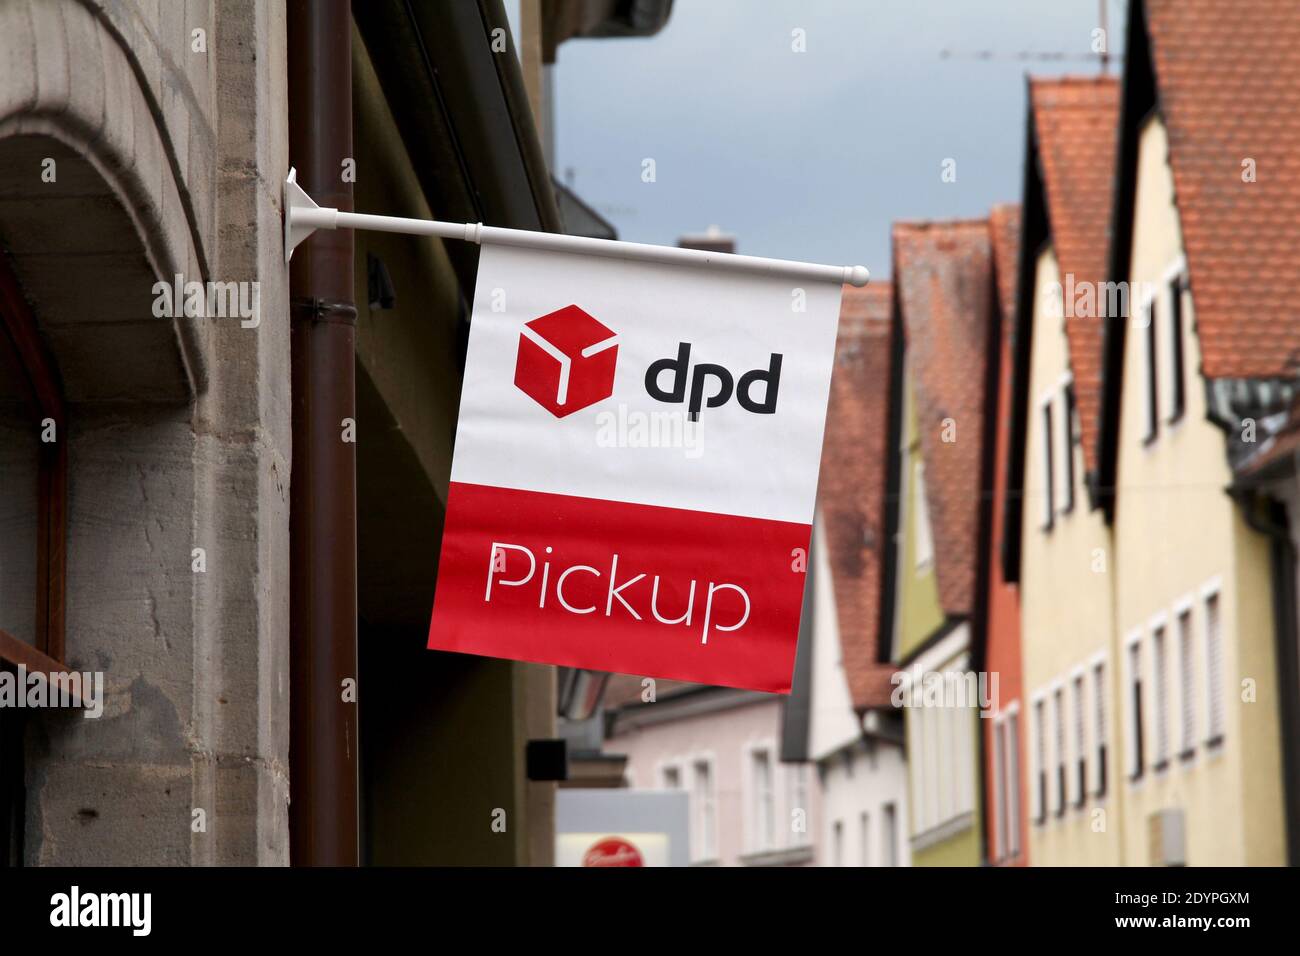 Forchheim, DEUTSCHLAND : DPD Paket Shop-Flagge und Logo am Eingang eines  Shops, der Abholservice für Online-Bestellungen anbietet. DPD ist eine  Paketzustellungs-Gesellschaft Stockfotografie - Alamy